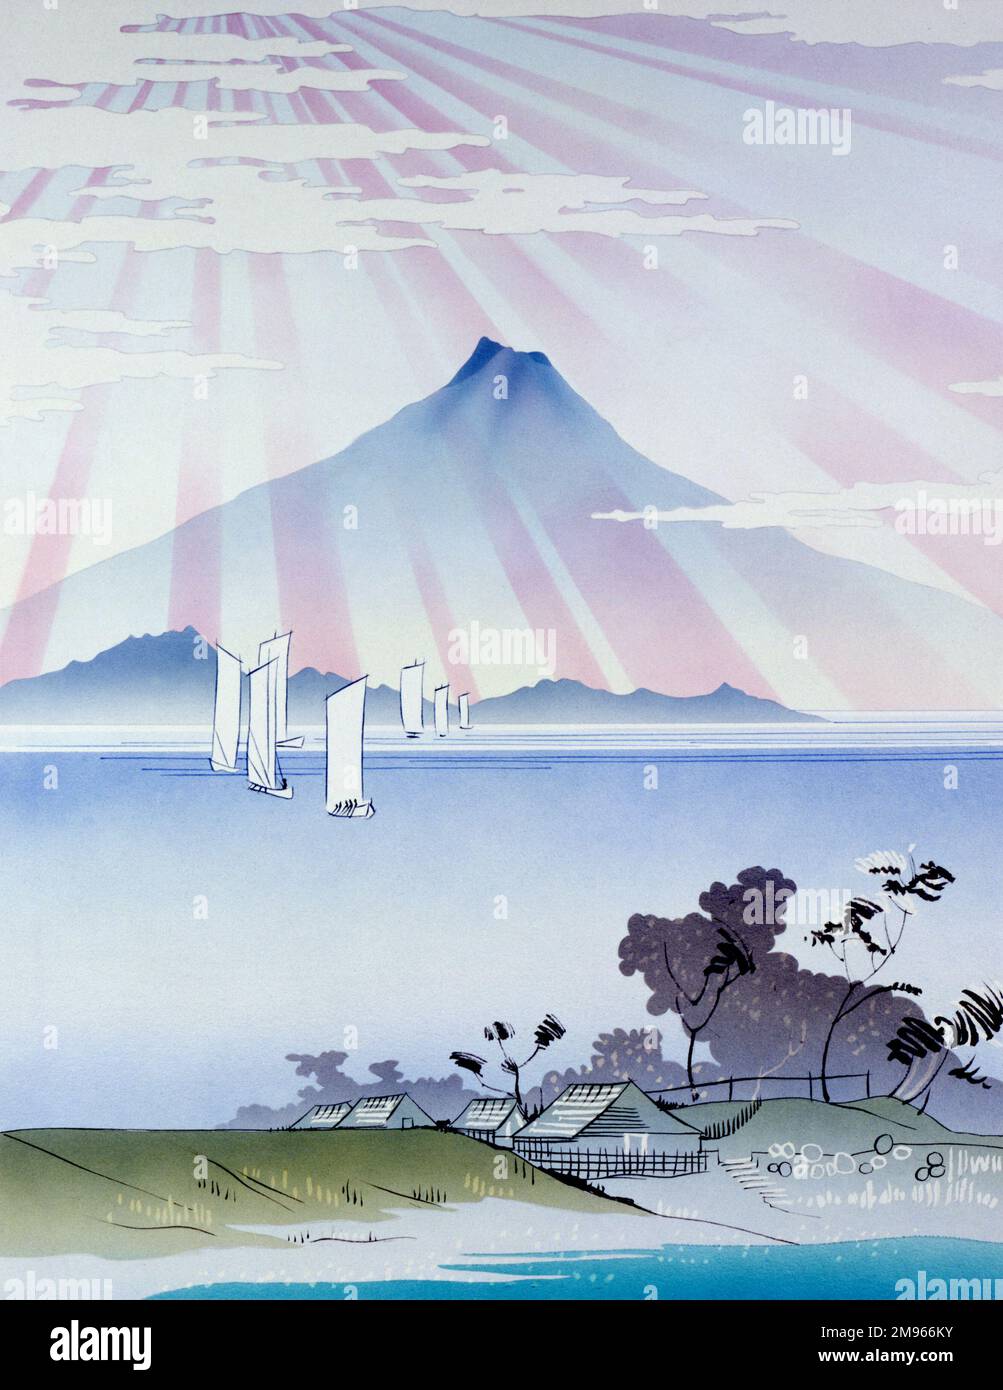 Une vue stylisée du Mont Fuji au Japon, dans le style des célèbres graveurs japonais de coupe de bois de la fin des 18th et 19th siècles. Peinture par Malcolm Greensmith. Banque D'Images